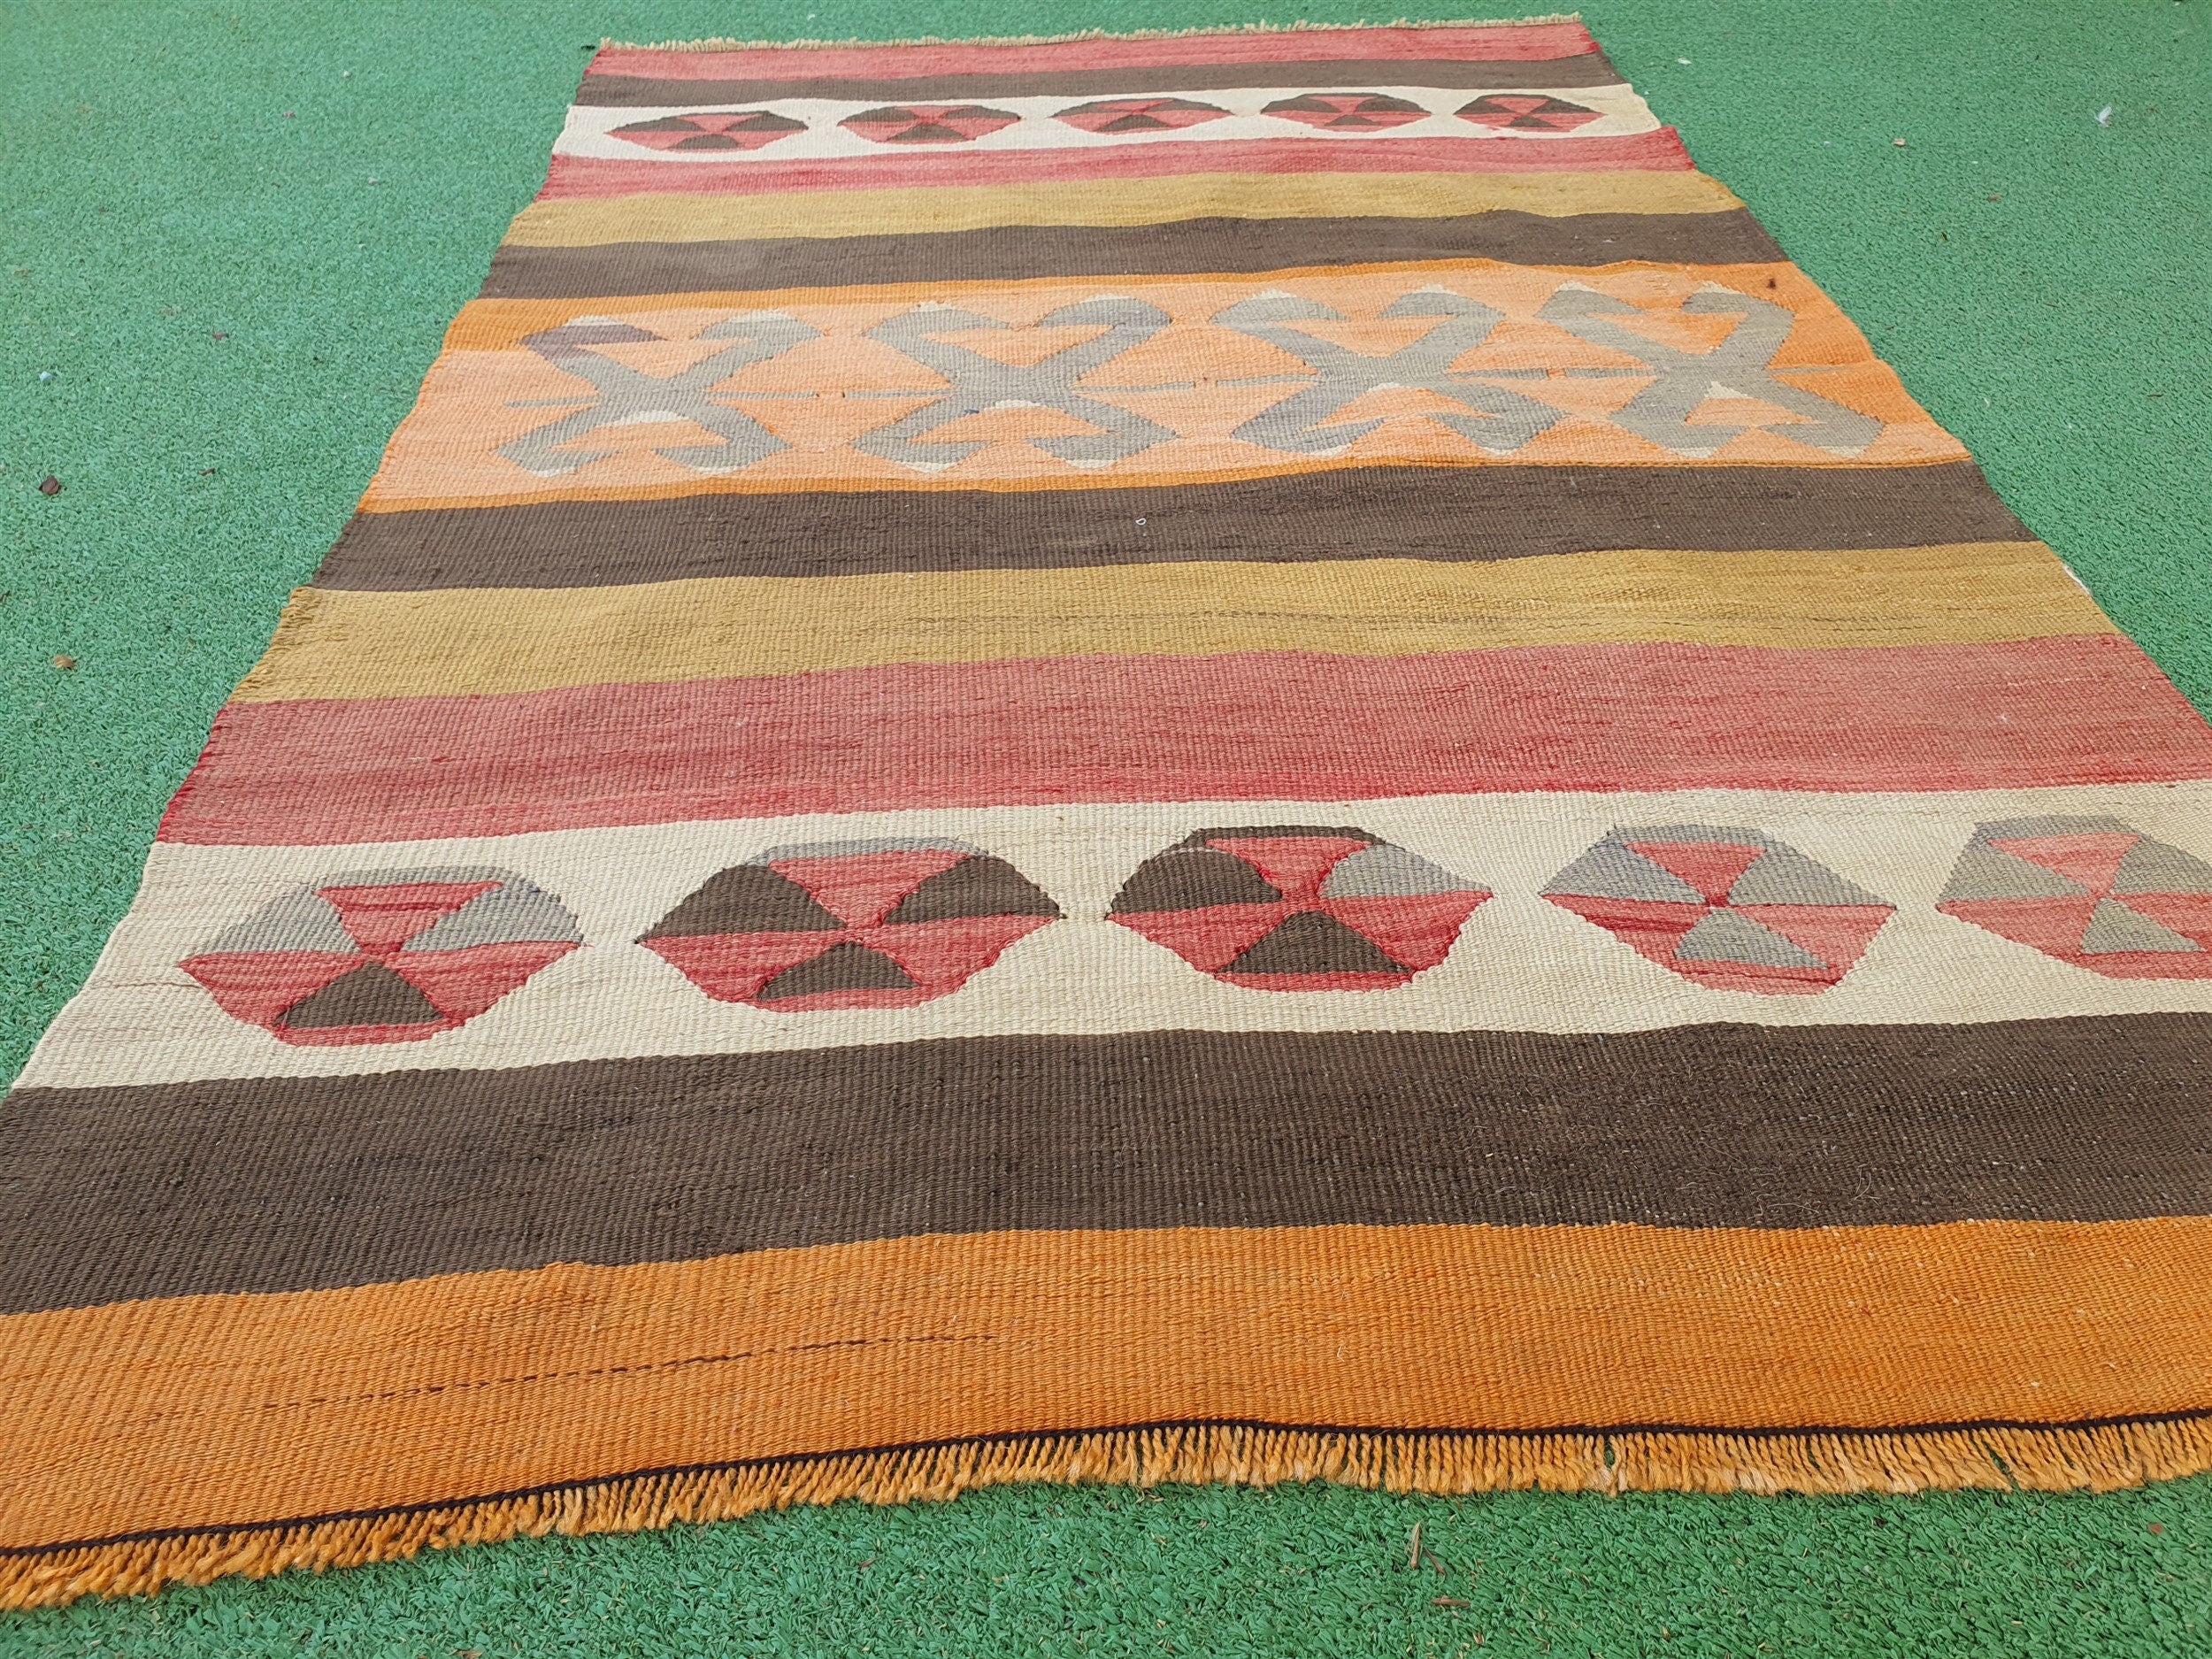 Afyon Turkish Kilim Rug, 3 ft 9 in x 2 ft 4 in Orange Green Beige and Brown Handmade Wool Flatweave Rug